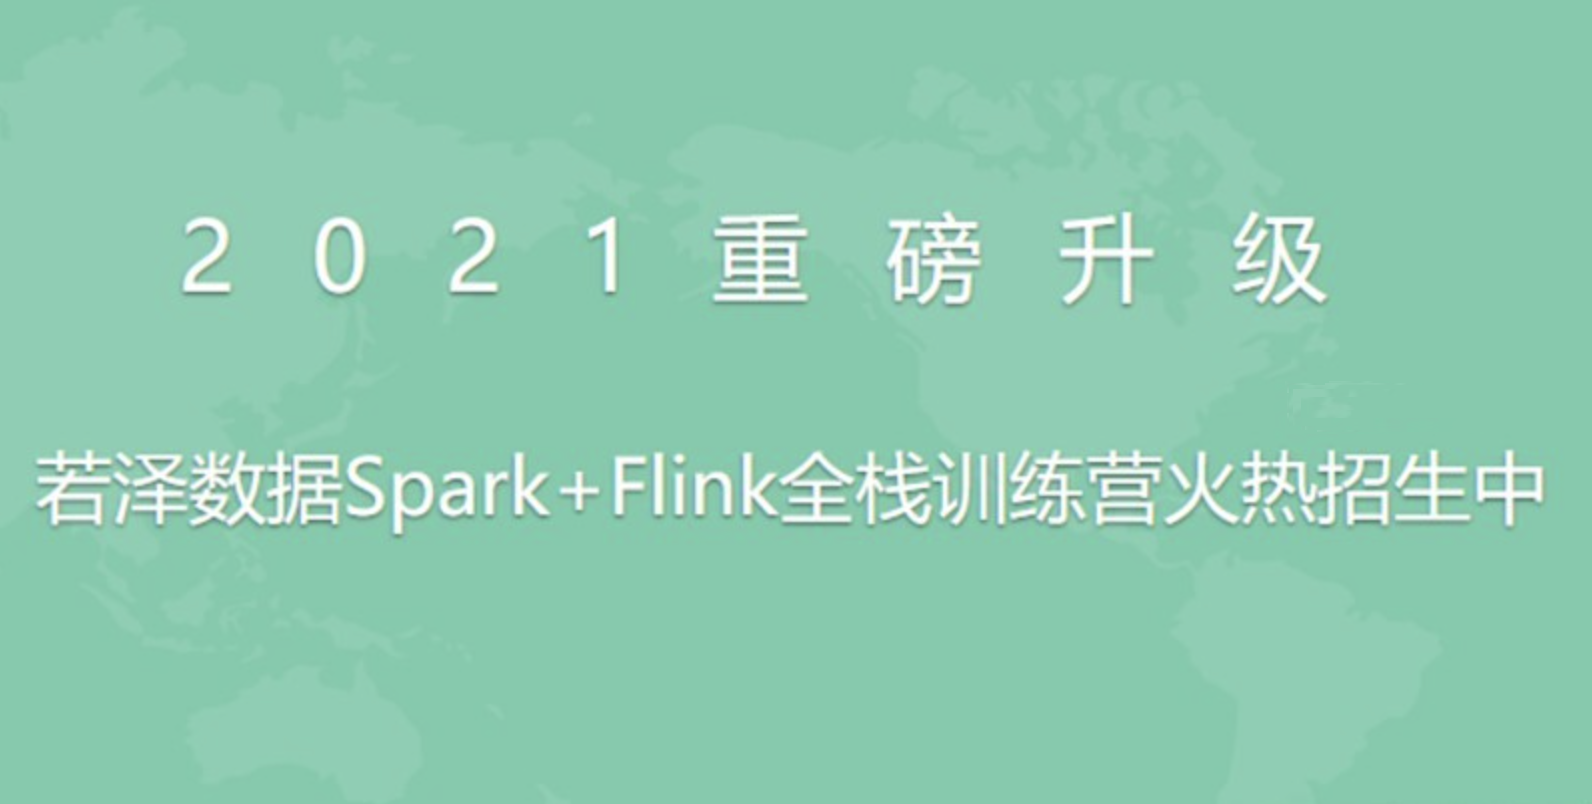 2021若泽数据Spark+Flink全栈训练营第11期--前置课